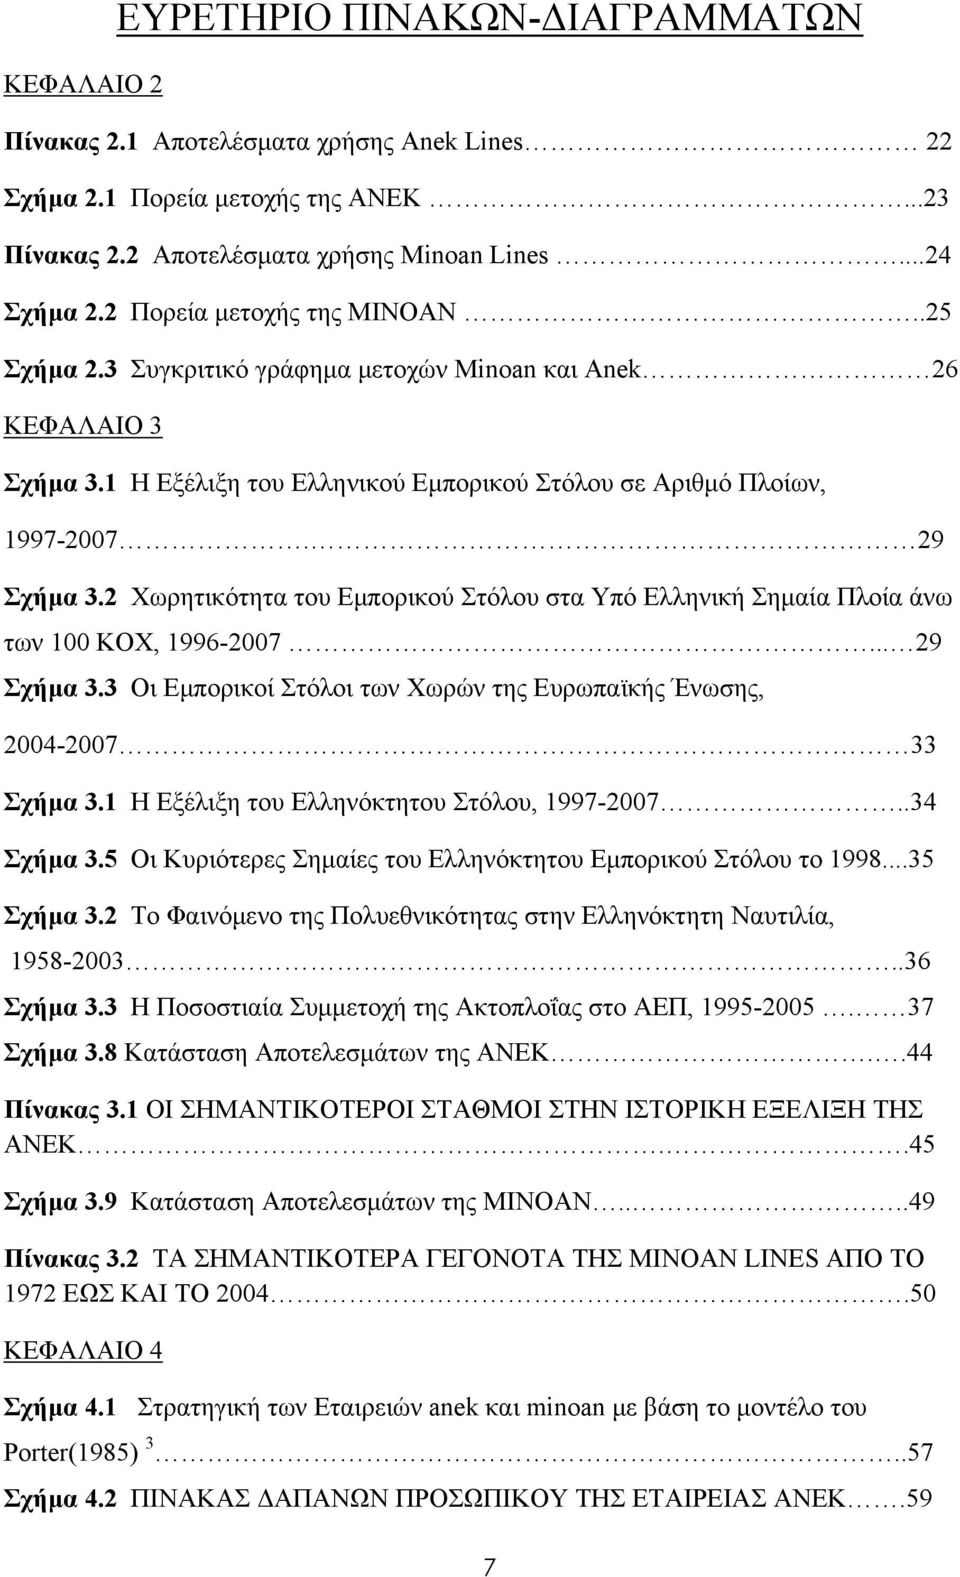 2 Χωρητικότητα του Εμπορικού Στόλου στα Υπό Ελληνική Σημαία Πλοία άνω των 100 ΚΟΧ, 1996-2007... 29 Σχήμα 3.3 Οι Εμπορικοί Στόλοι των Χωρών της Ευρωπαϊκής Ένωσης, 2004-2007 33 Σχήμα 3.